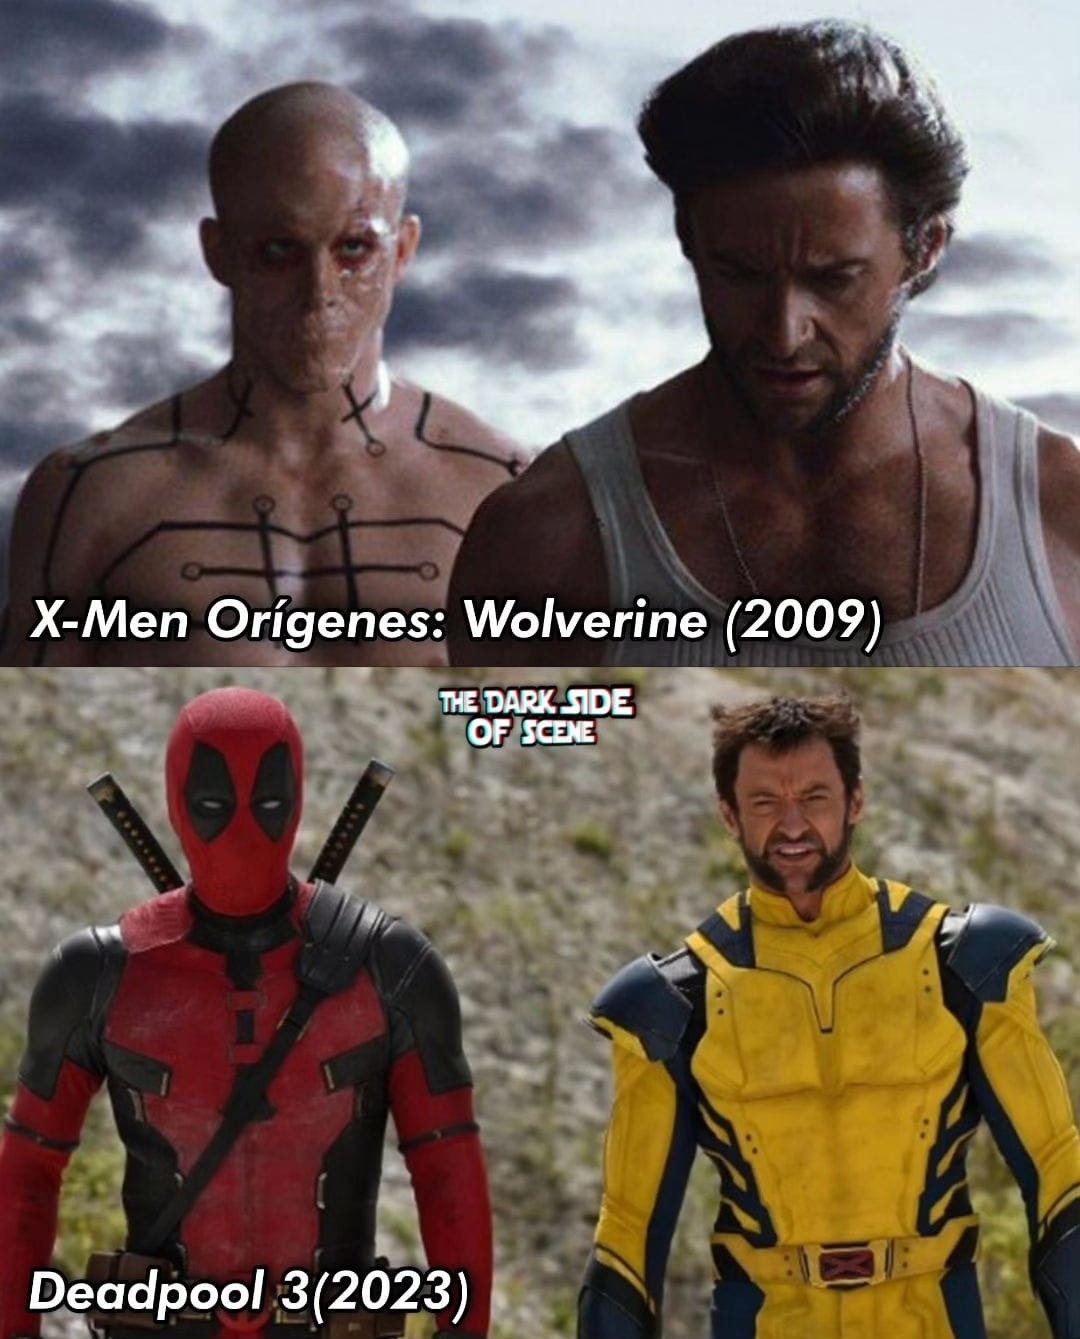 Opinión controvertida: Me gustó la peli de X-Men orígenes - meme